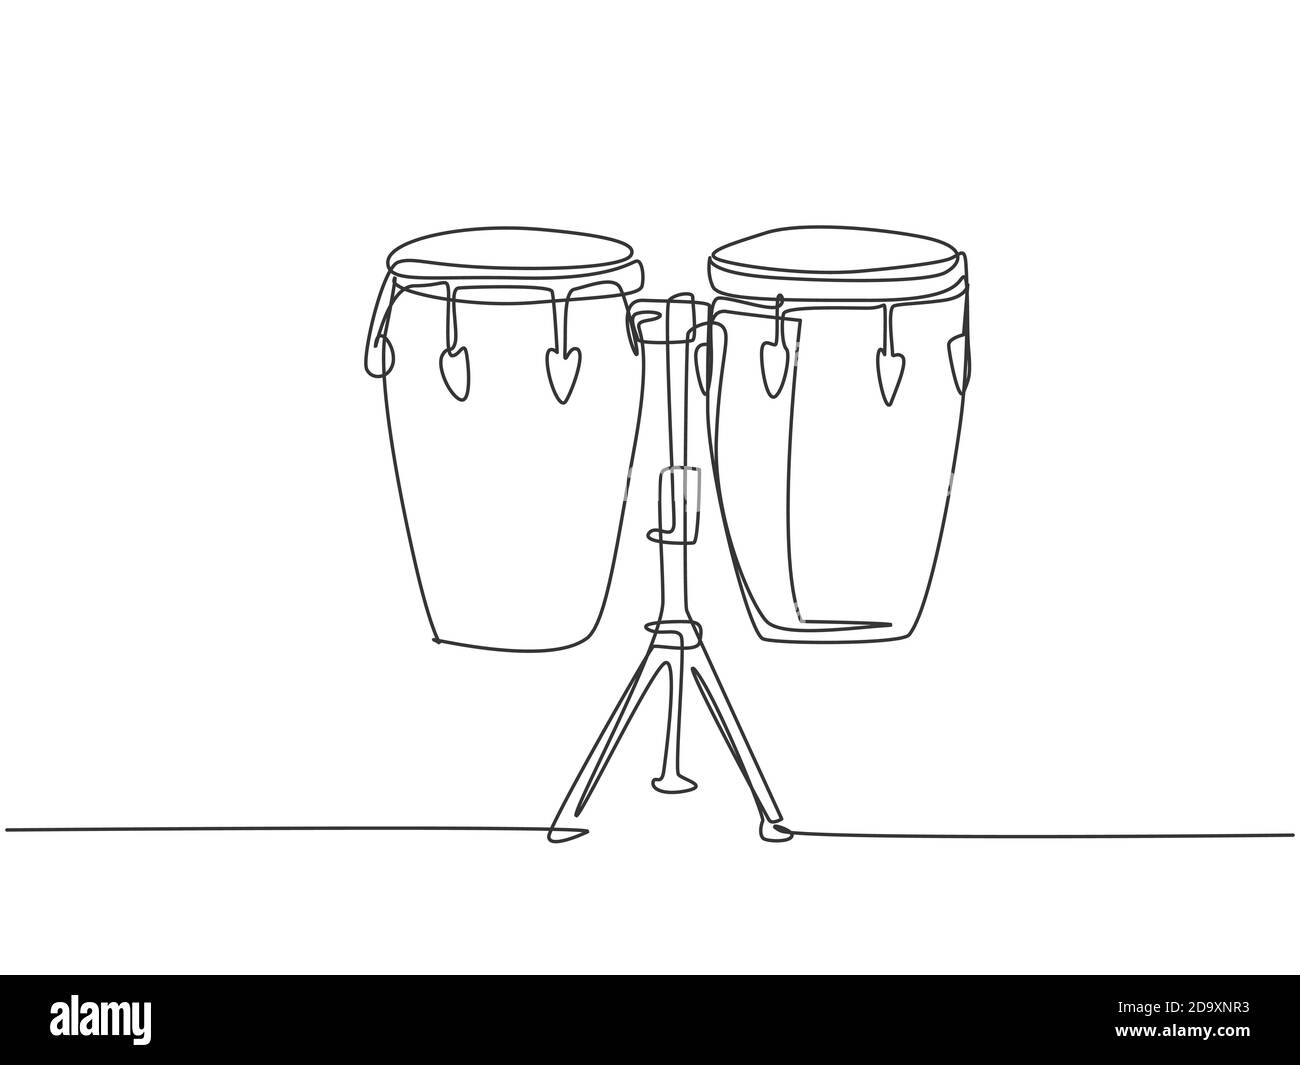 Une ligne continue de dessin du tambour ethnique africain traditionnel, bongo. Concept d'instruments de musique à percussion. Dessin graphique dynamique à une seule ligne Illustration de Vecteur